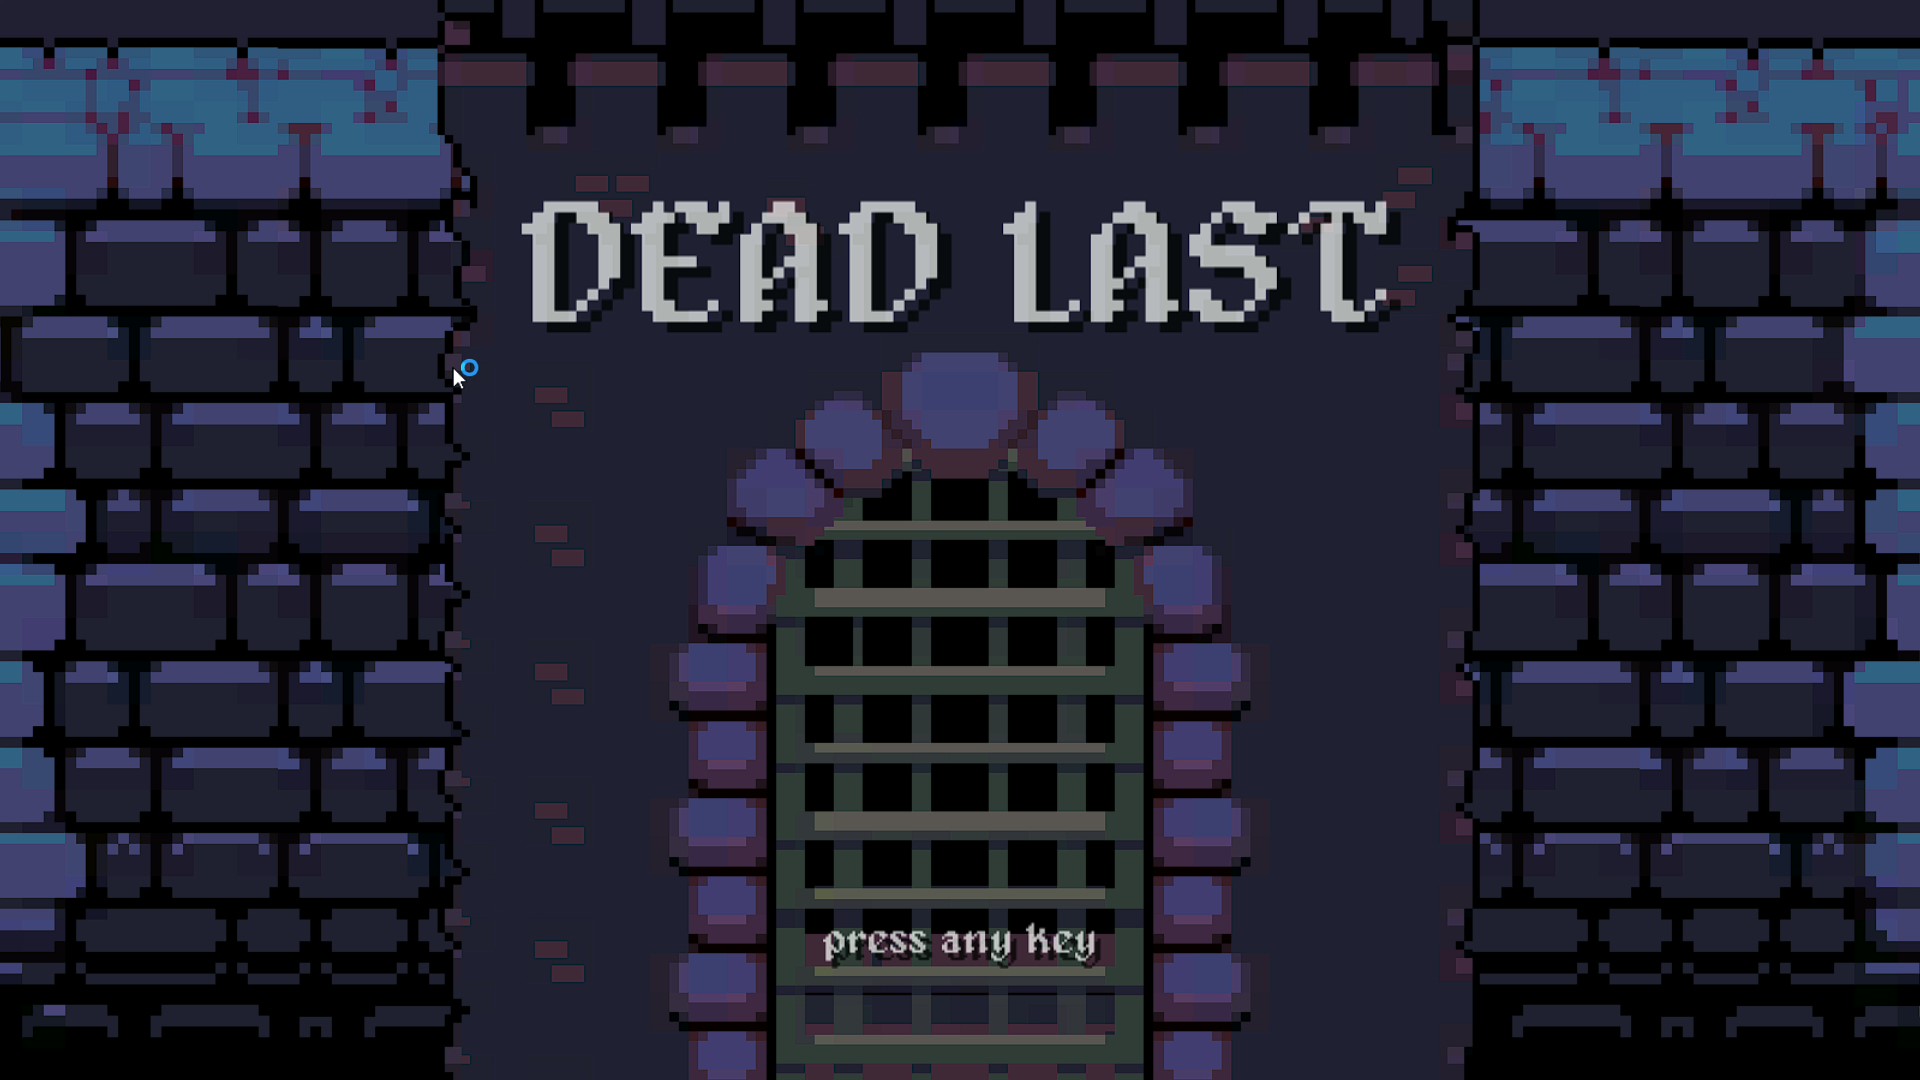 DEAD LAST IN CASTLE